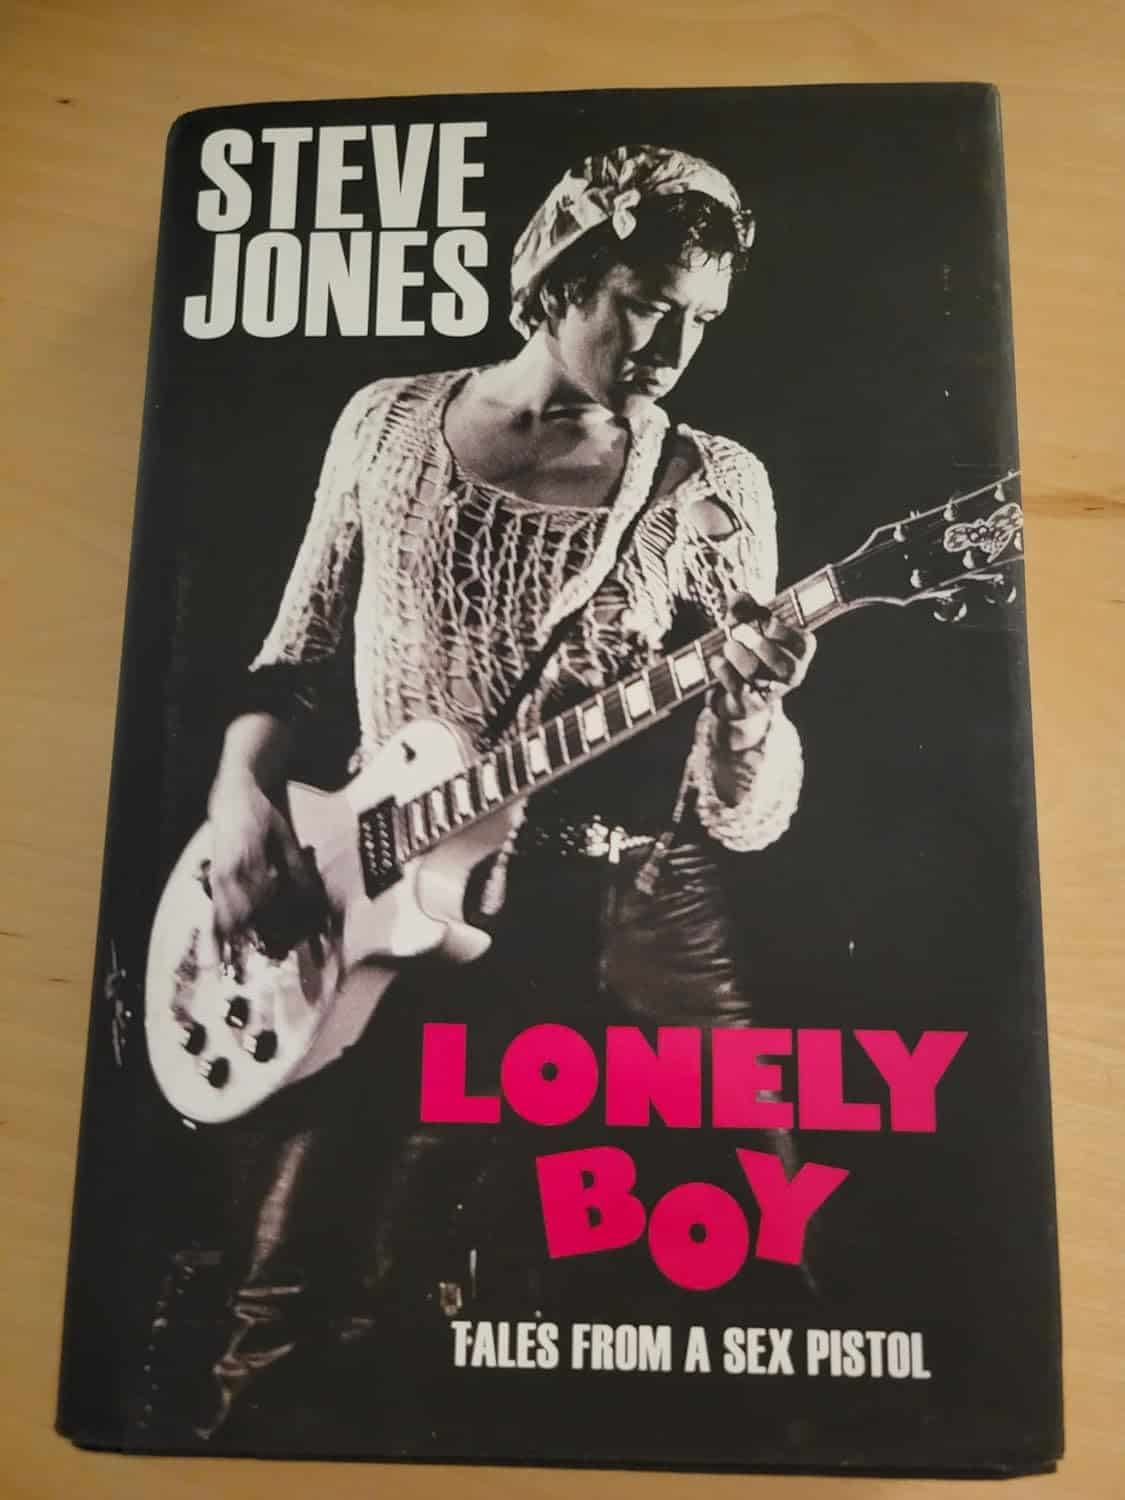 Lonely Boy Tales From A Sex Pistol by Steve Jones